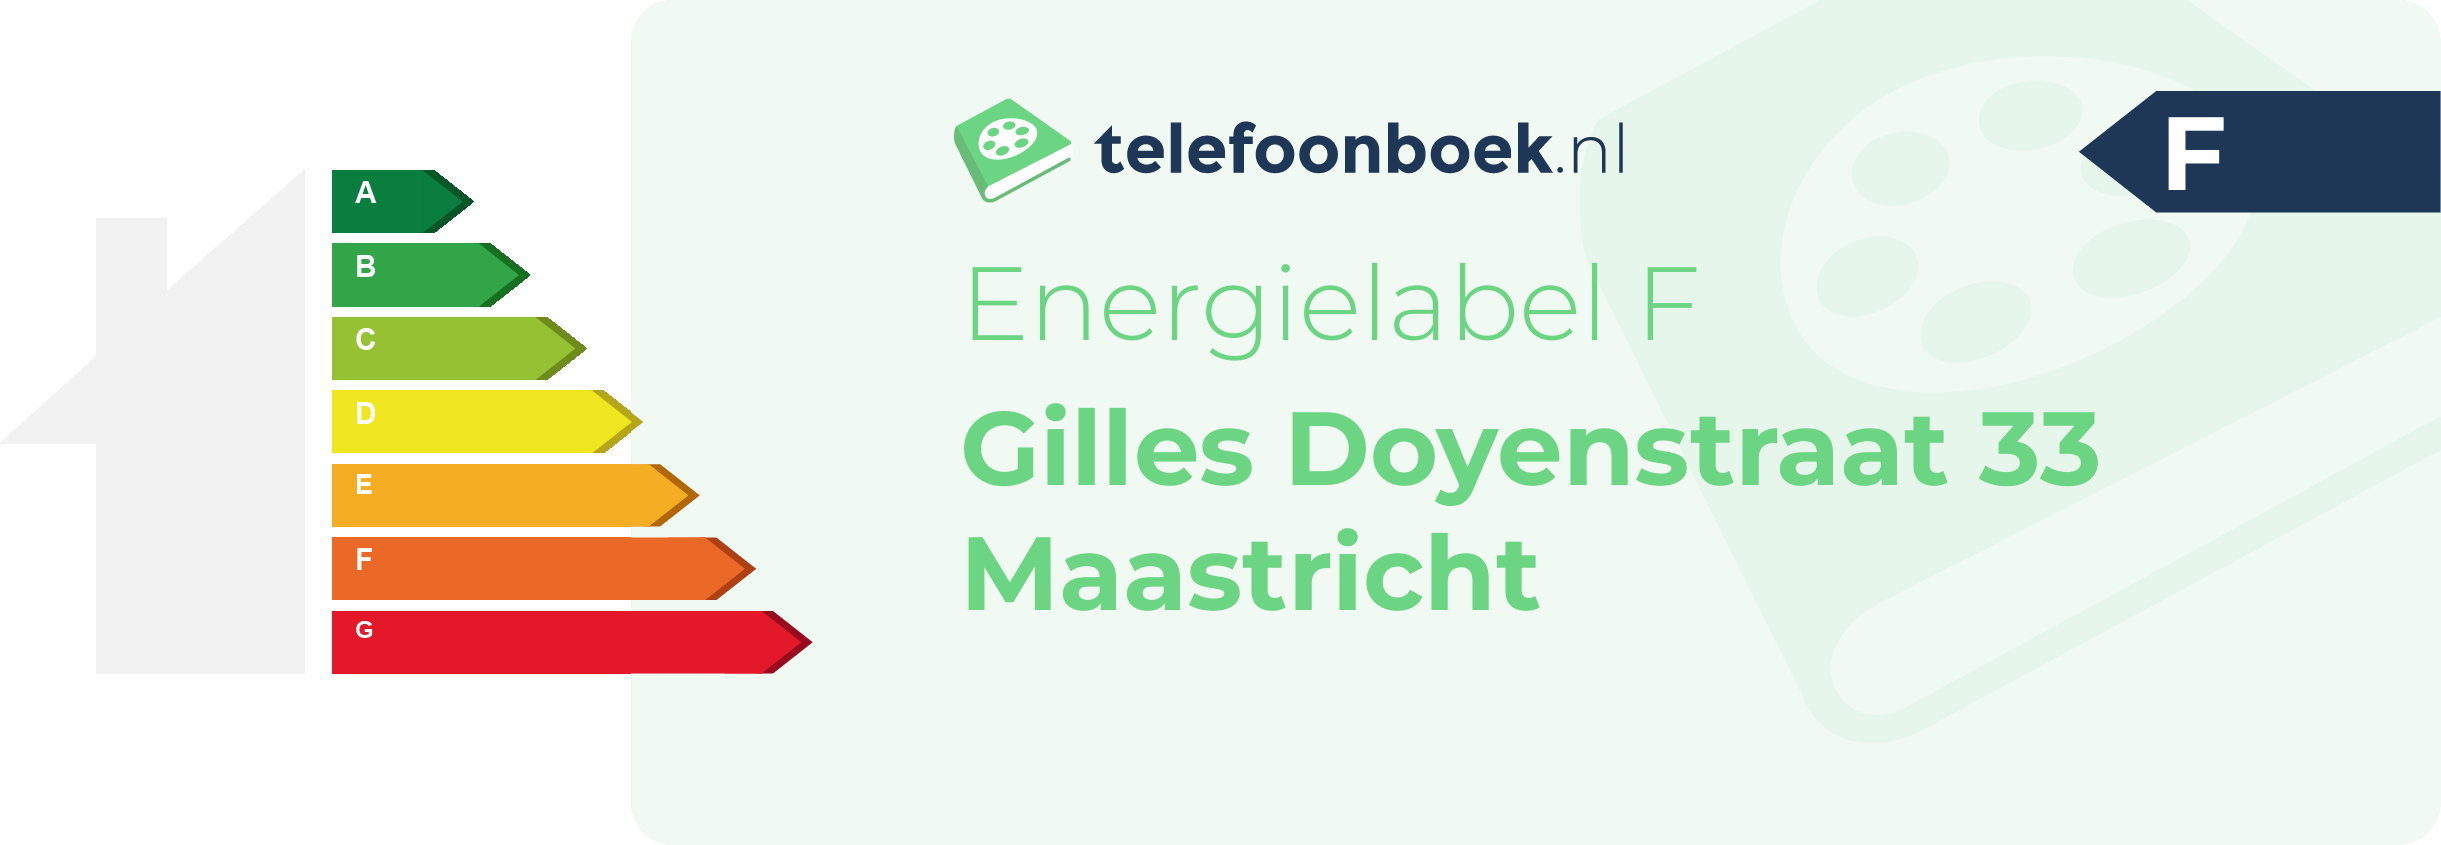 Energielabel Gilles Doyenstraat 33 Maastricht